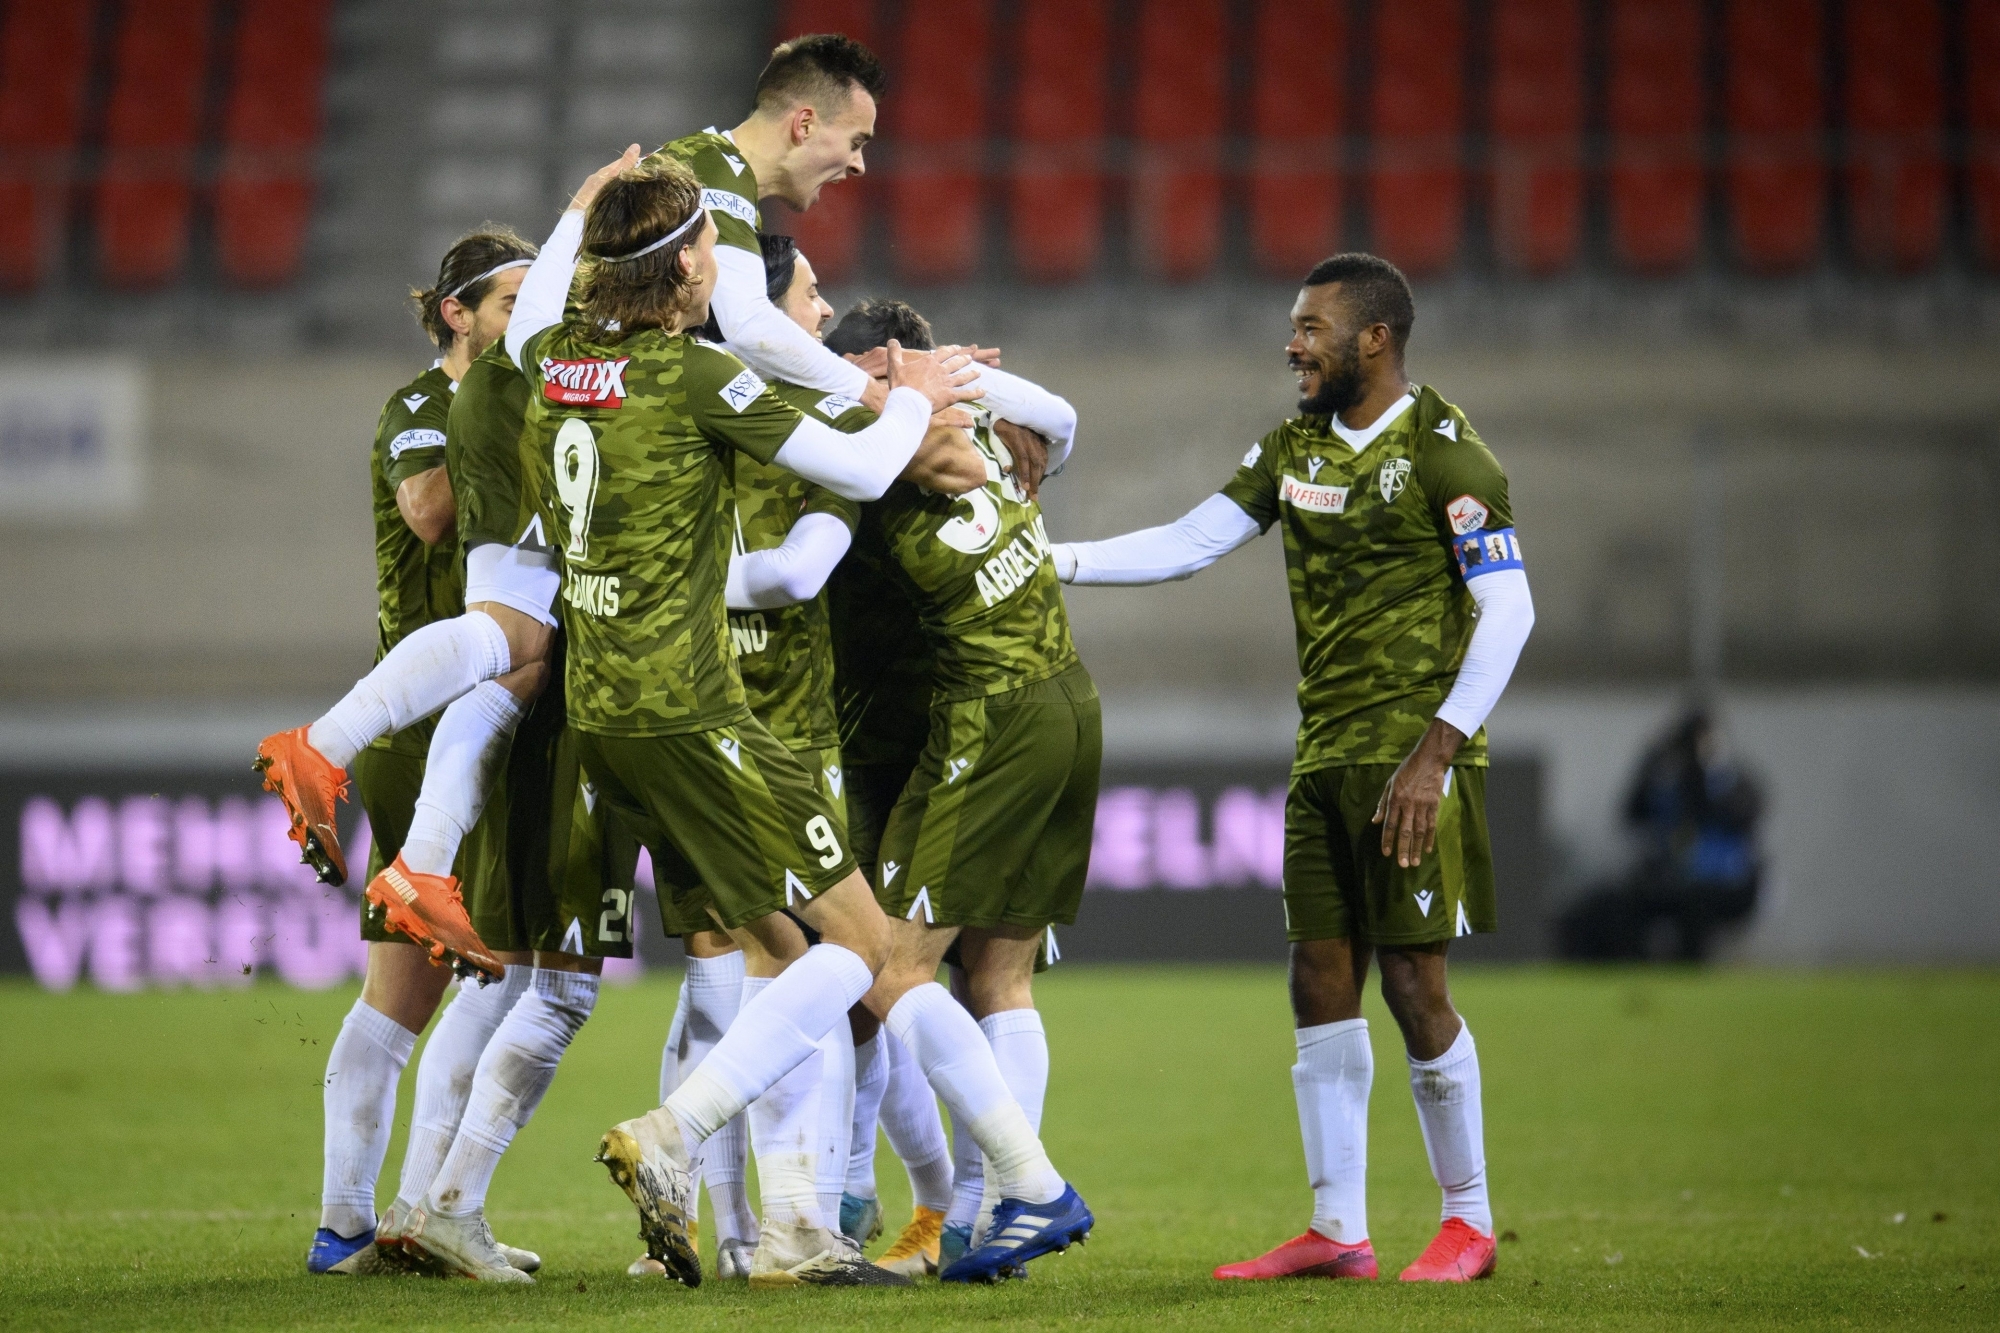 Les joueurs du FC Sion jubilent après le but inscrit à la dernière minute du temps réglementaire par Ayoub Abdellaoui contre le FC Vaduz.